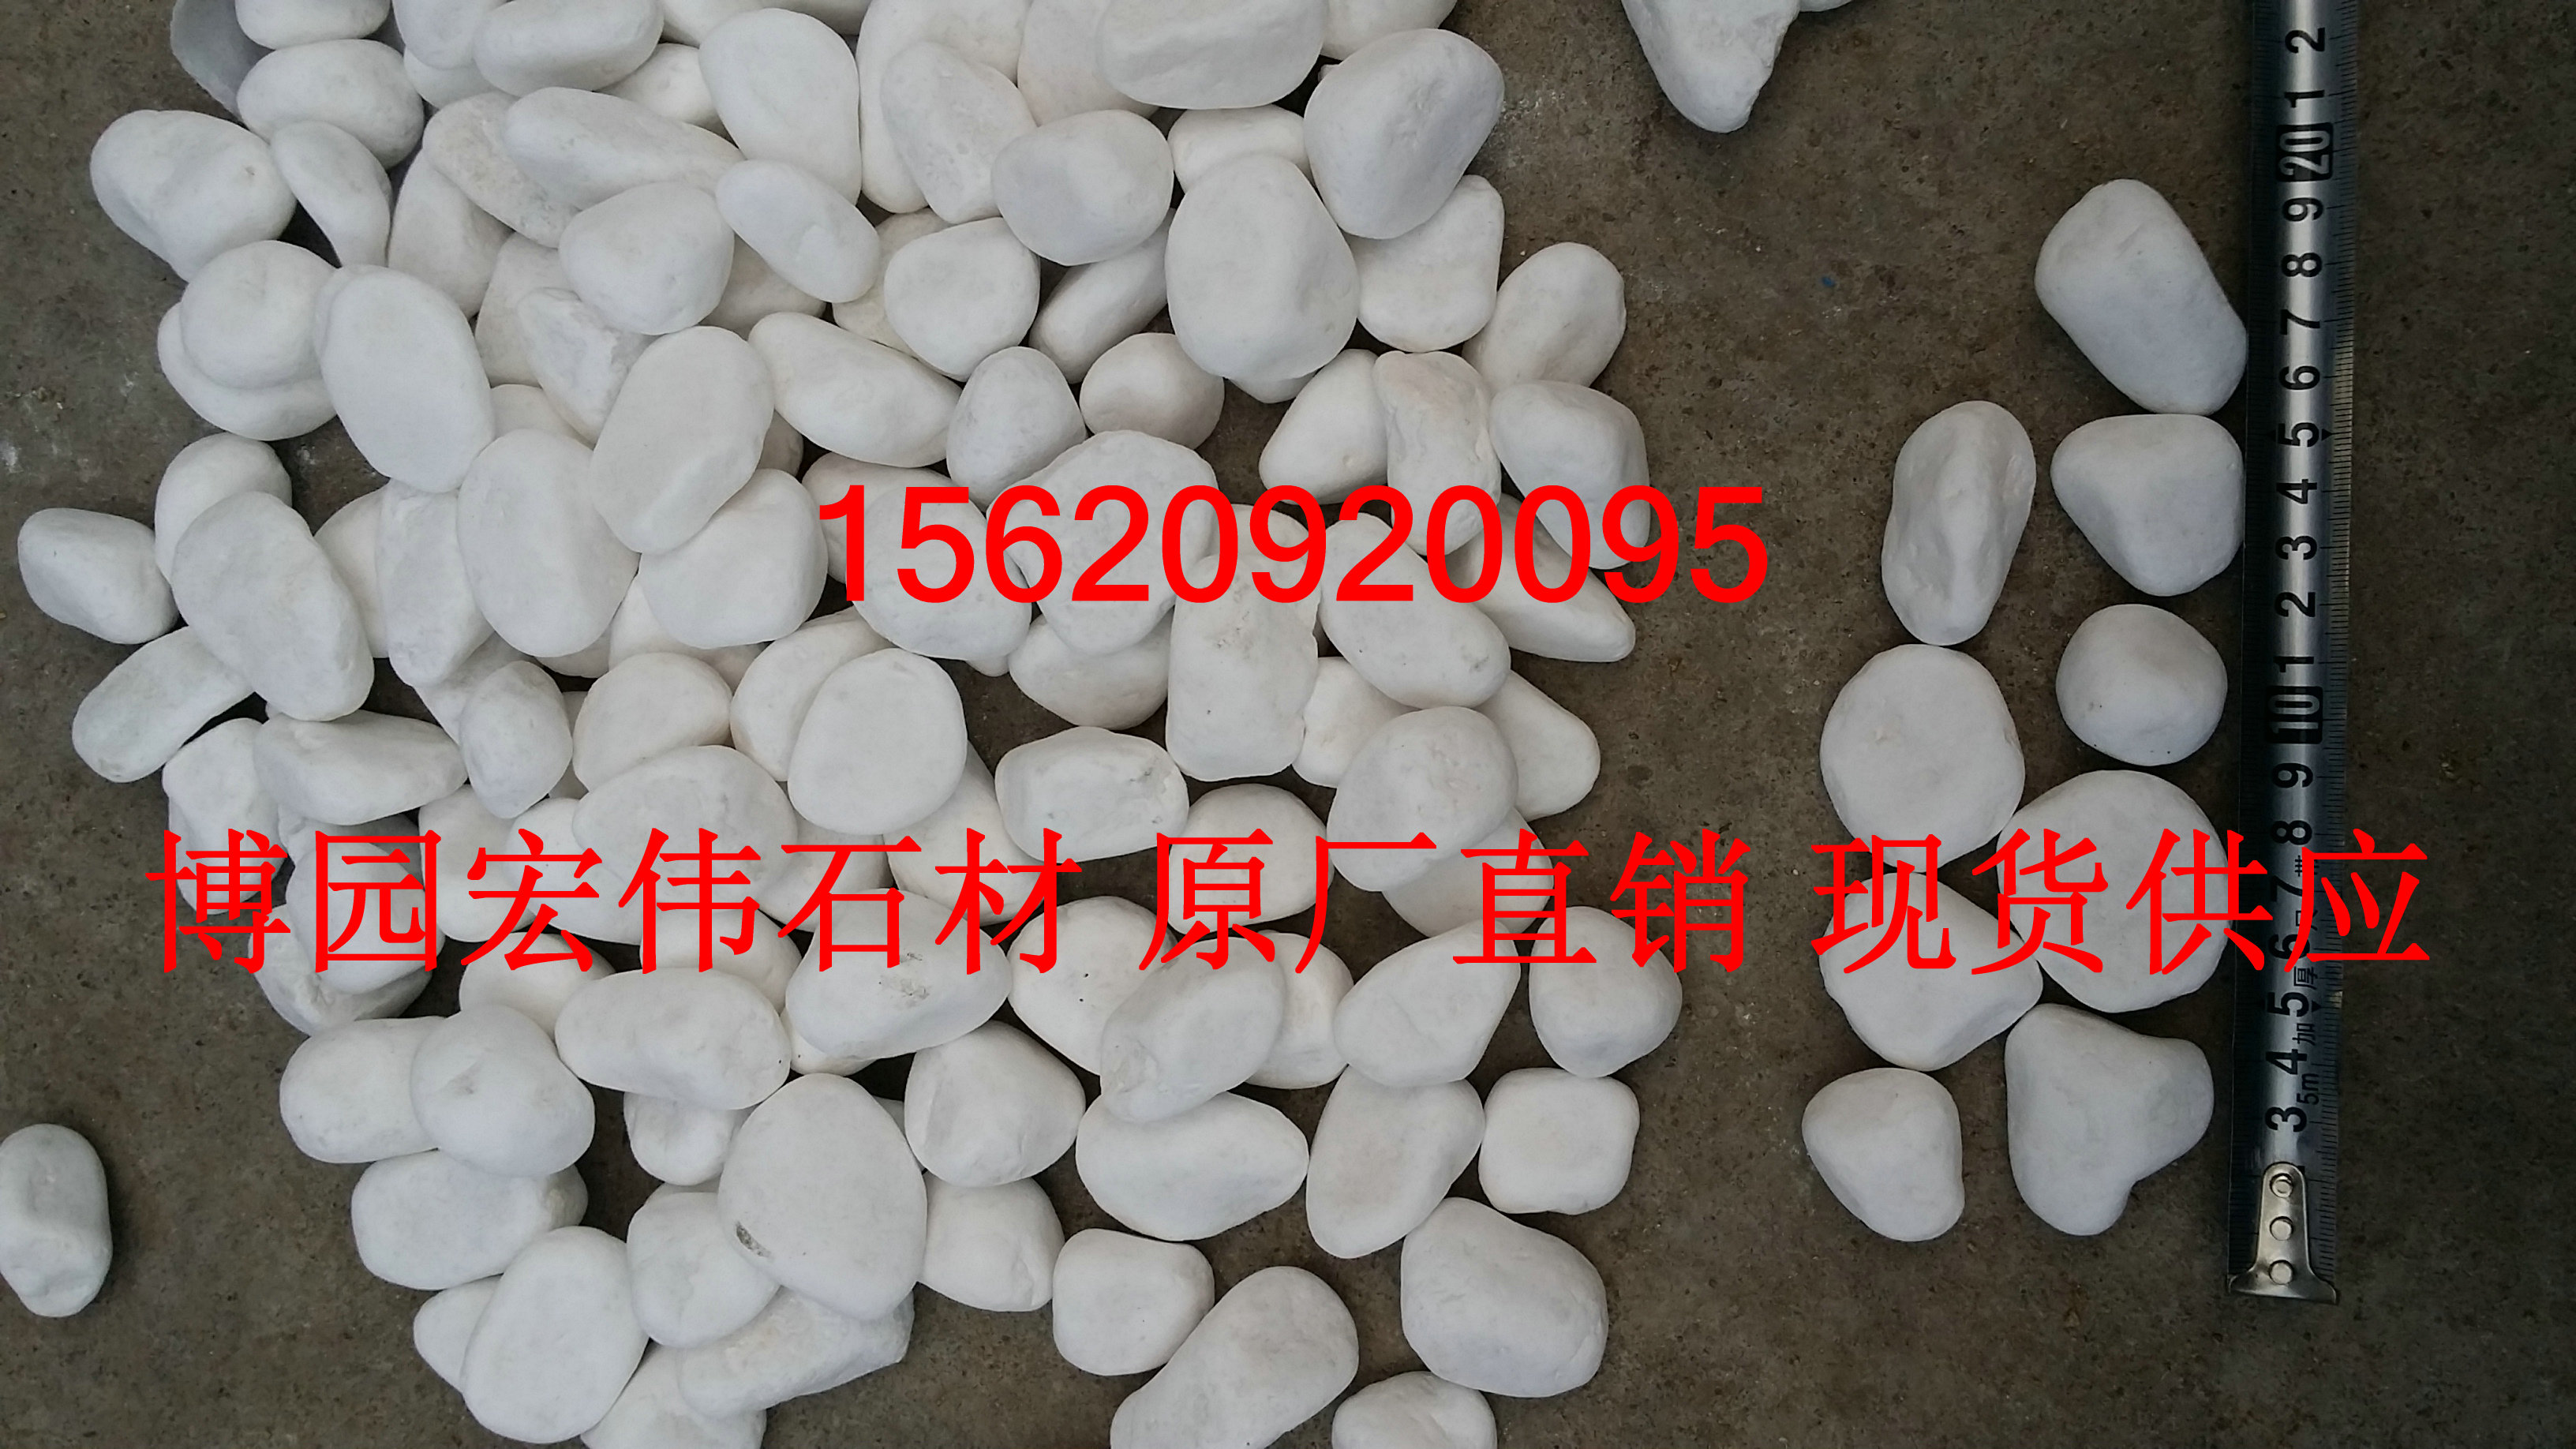 天津市天津白色鹅卵石价格厂家天津白色鹅卵石价格